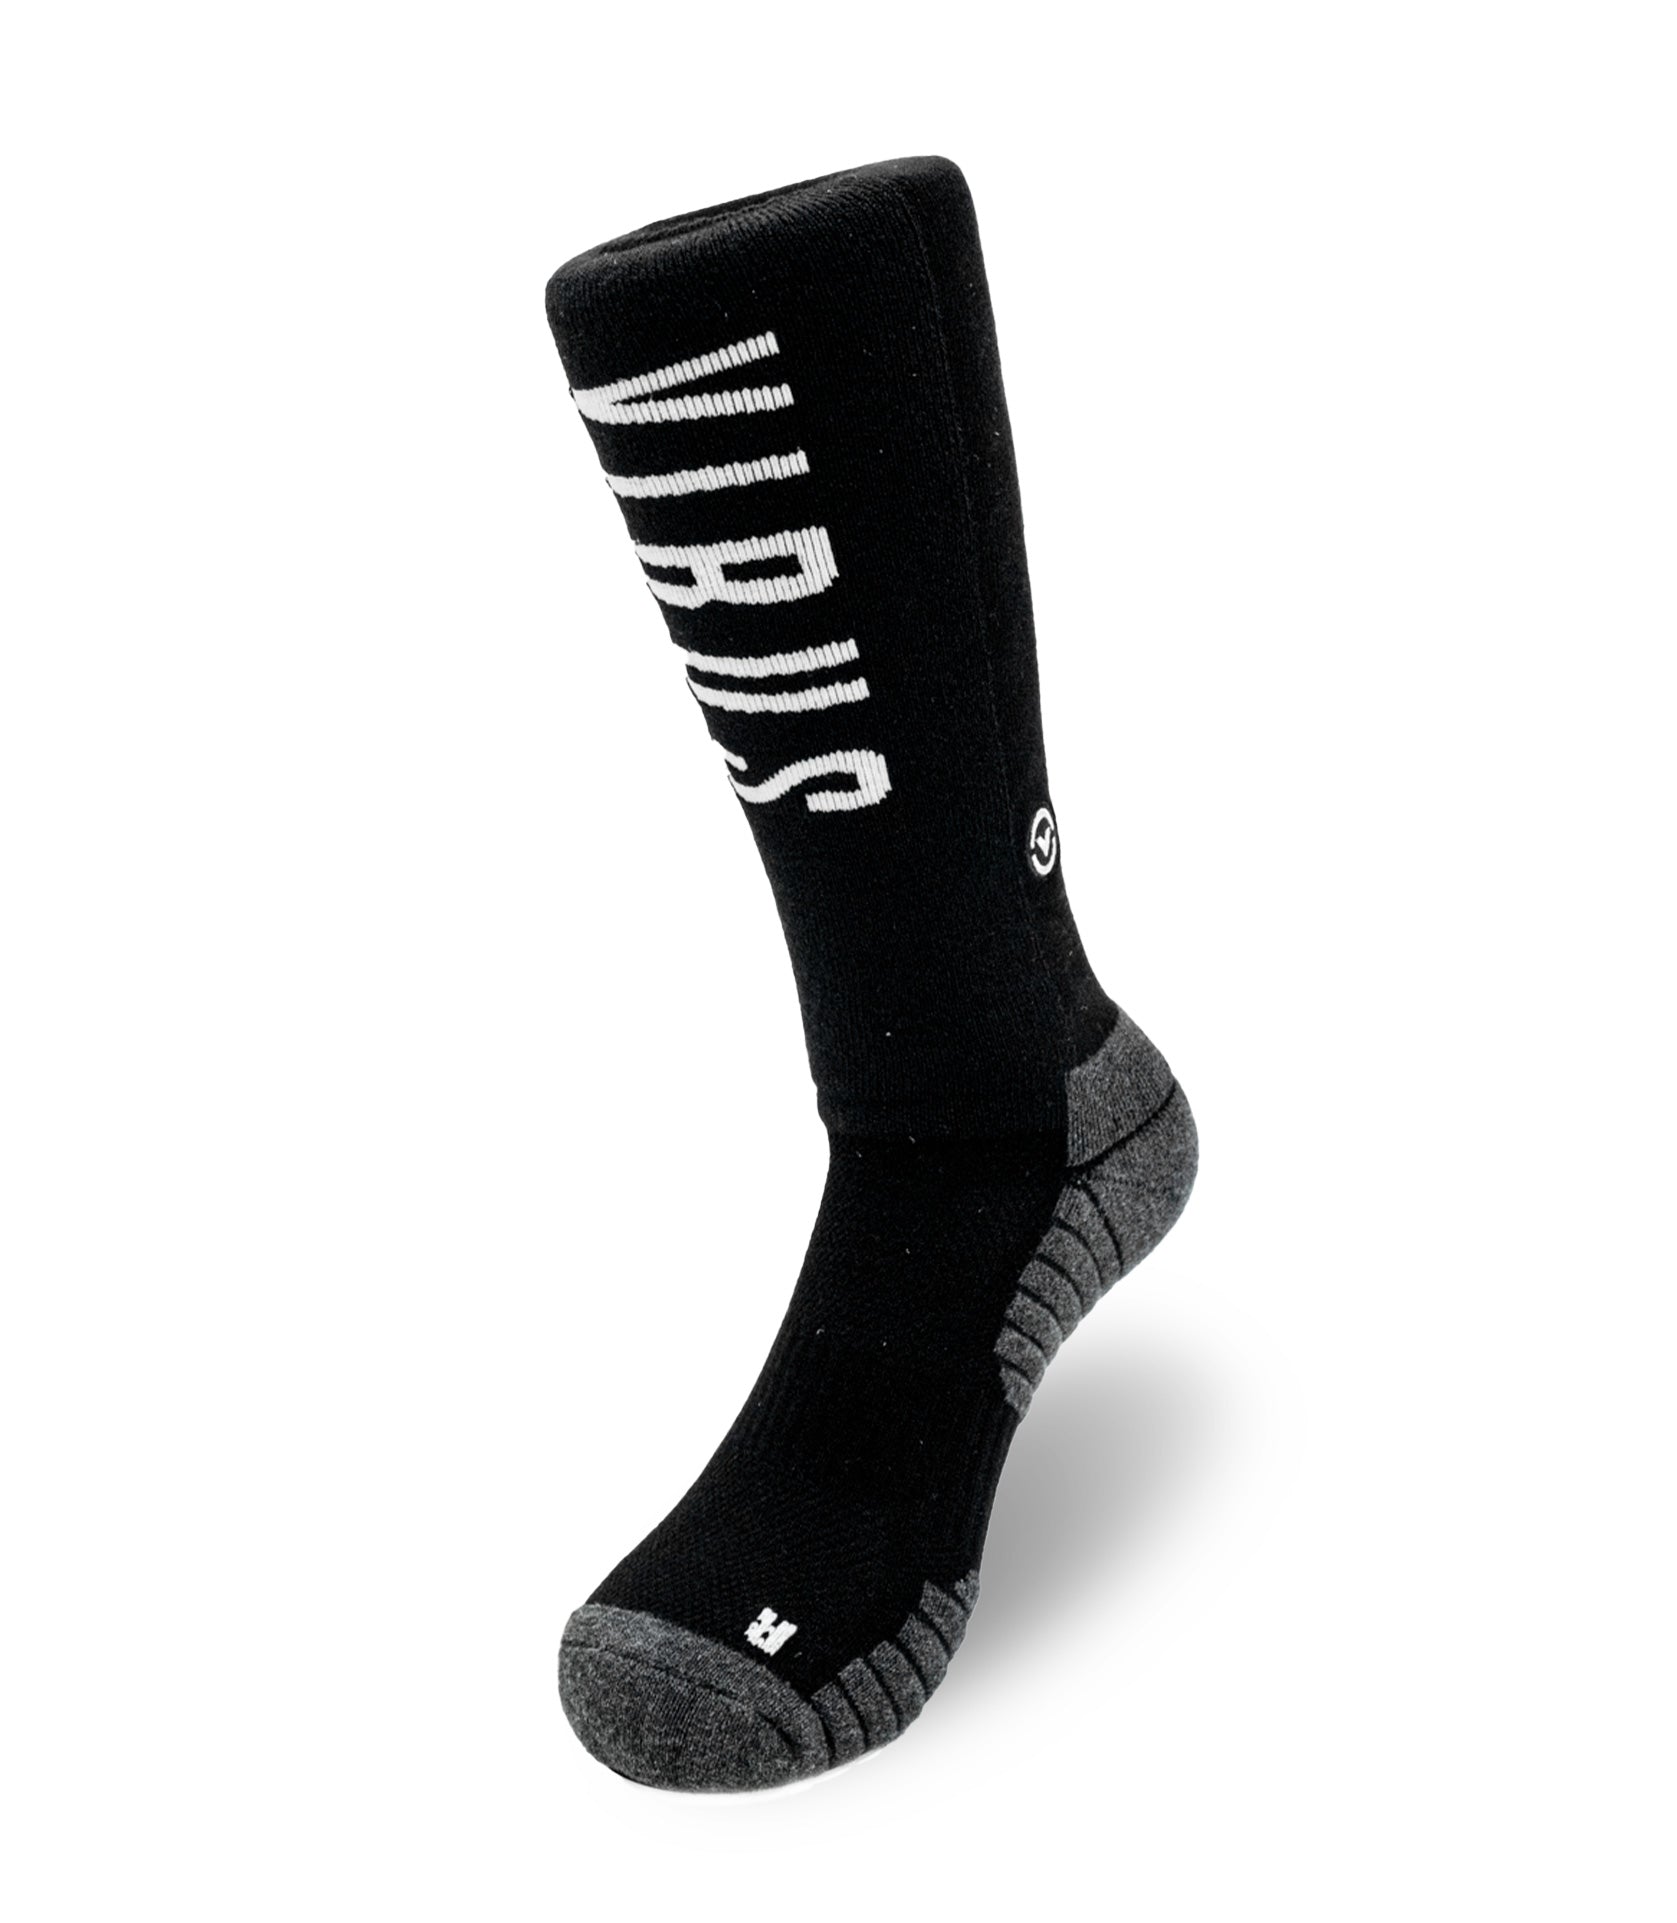 Hyper Performance Knee High Socks